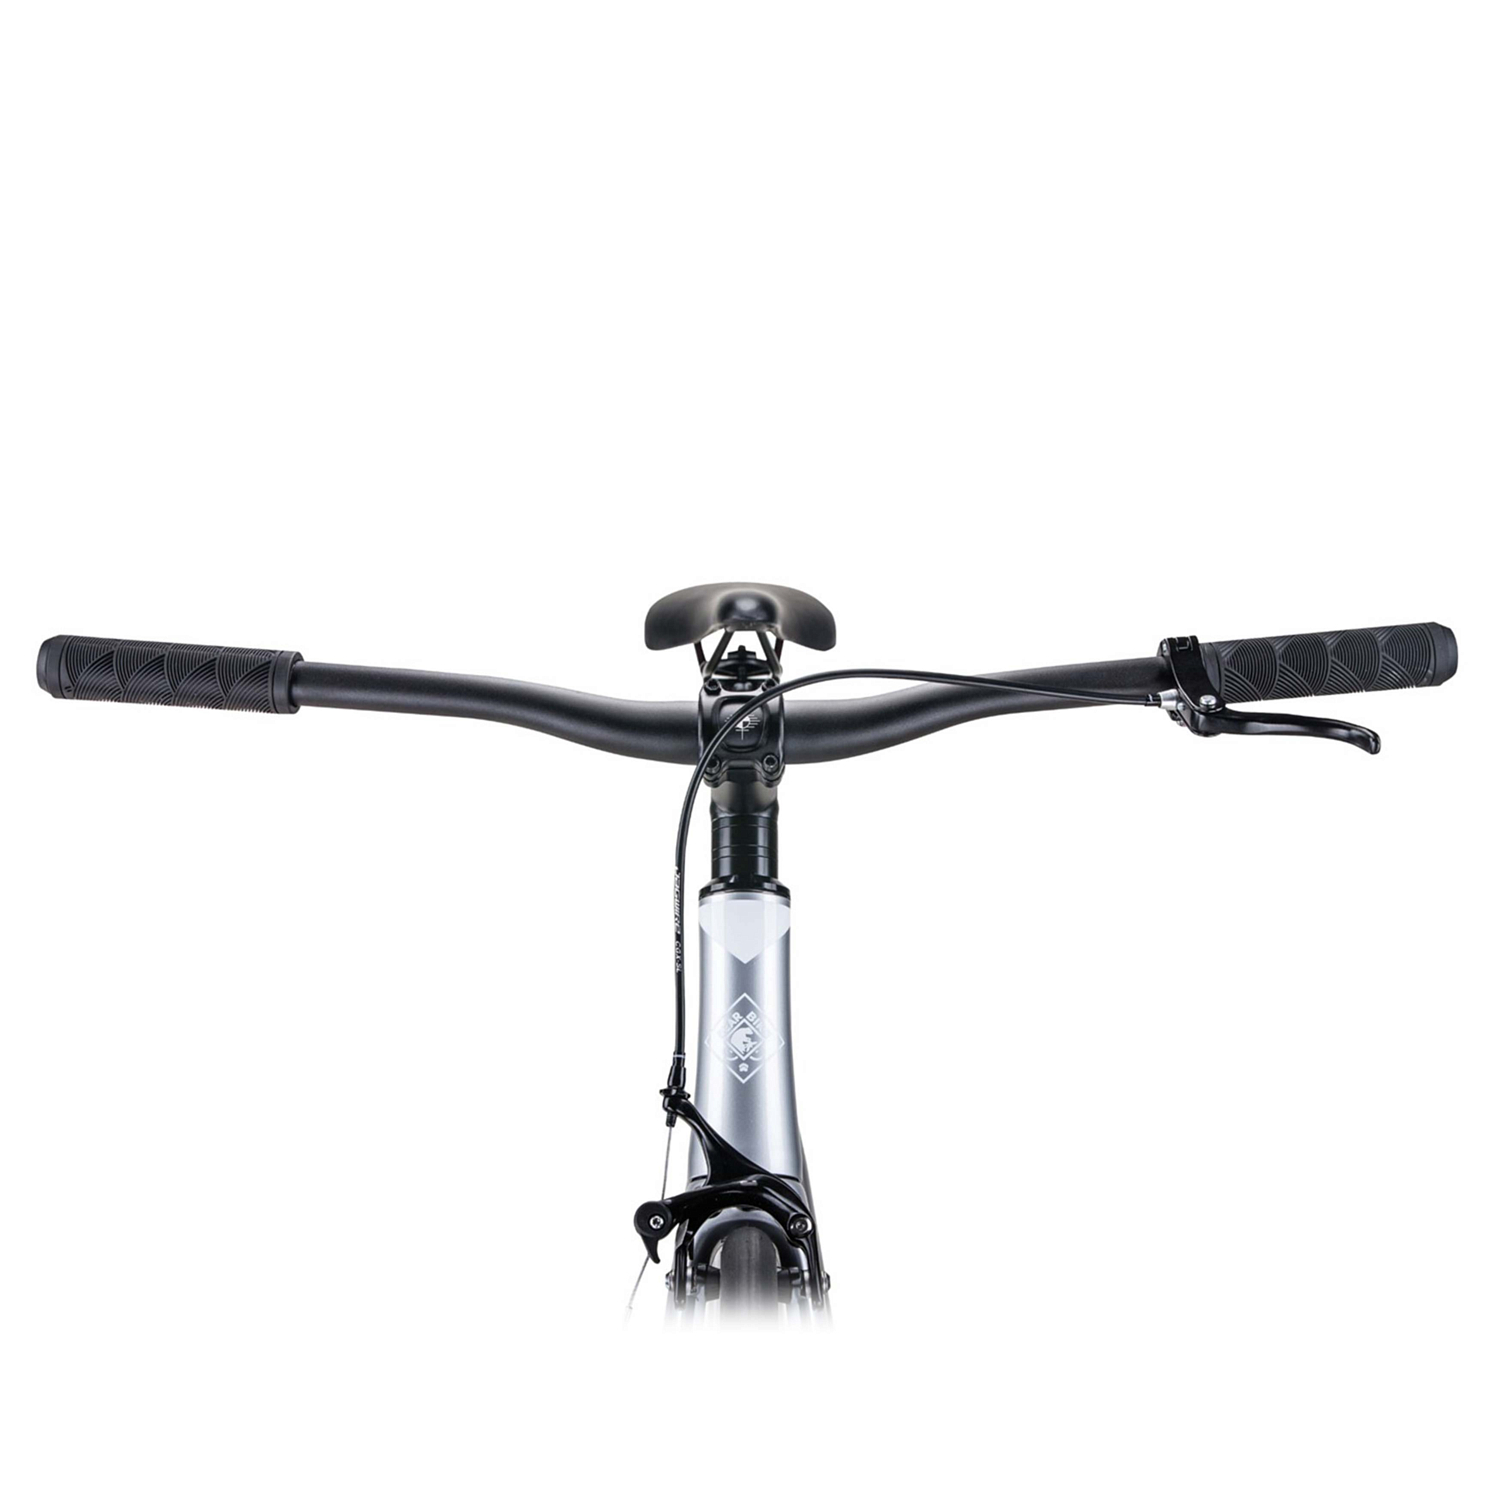 Велосипед BEARBIKE ARMATA 2023 Серый